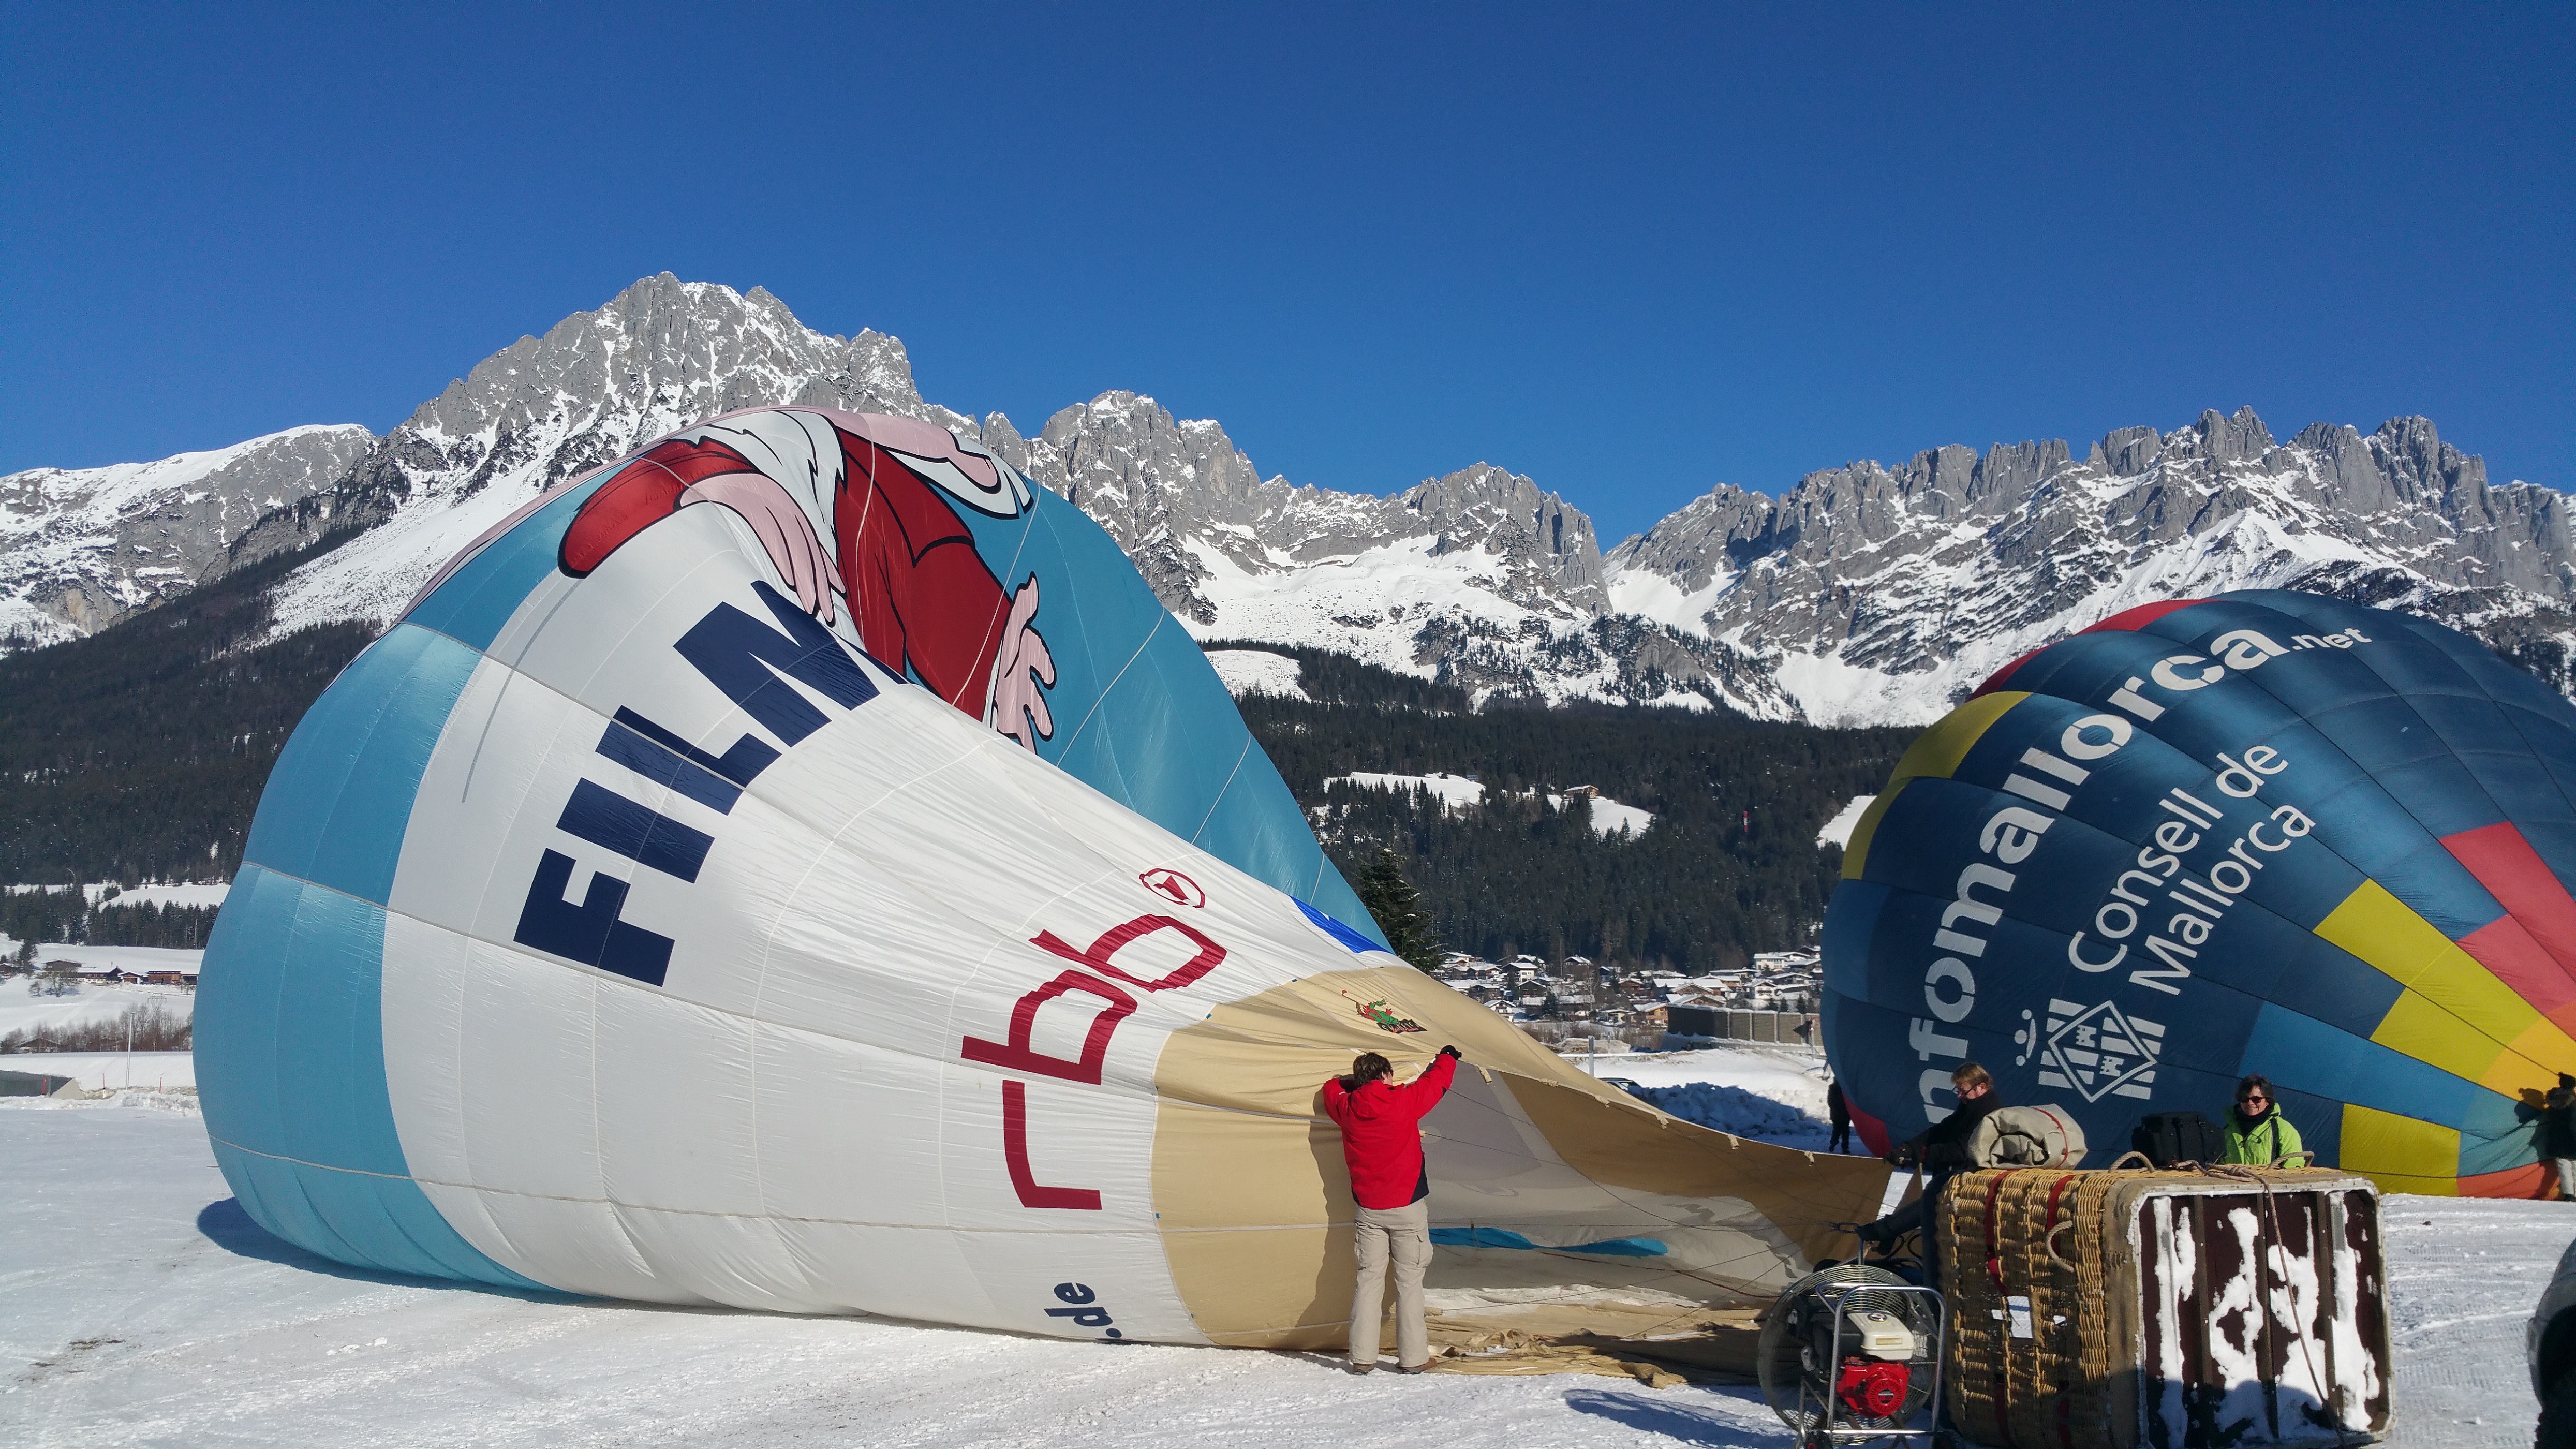 Alpenballooning 2 